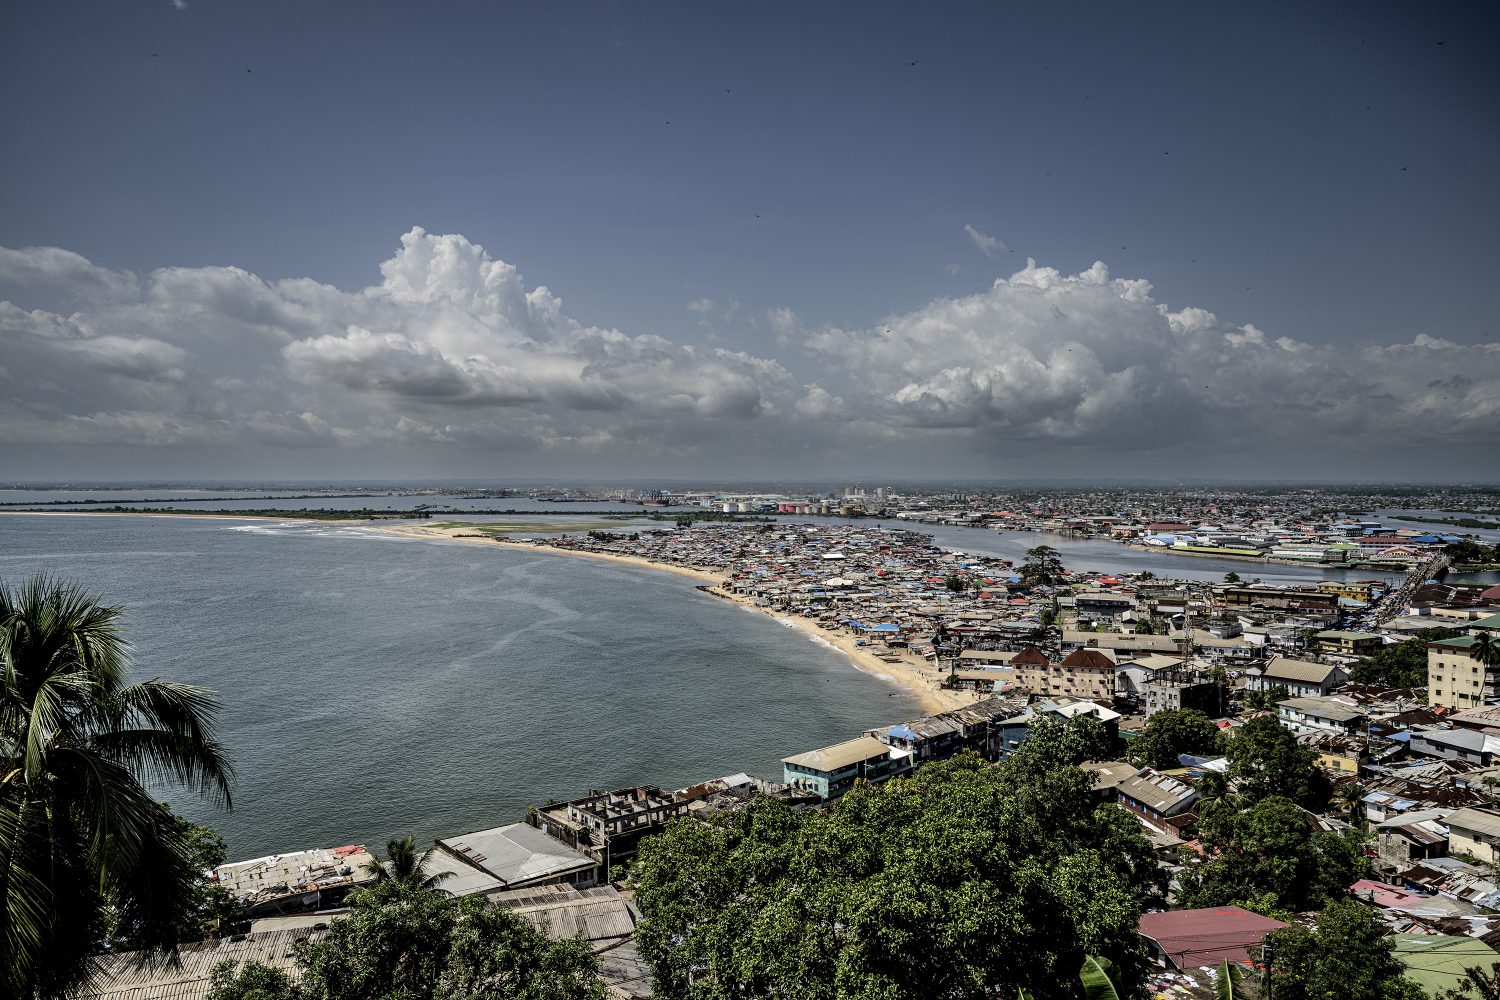 Liberia projekt de endelig redi

Her er det: